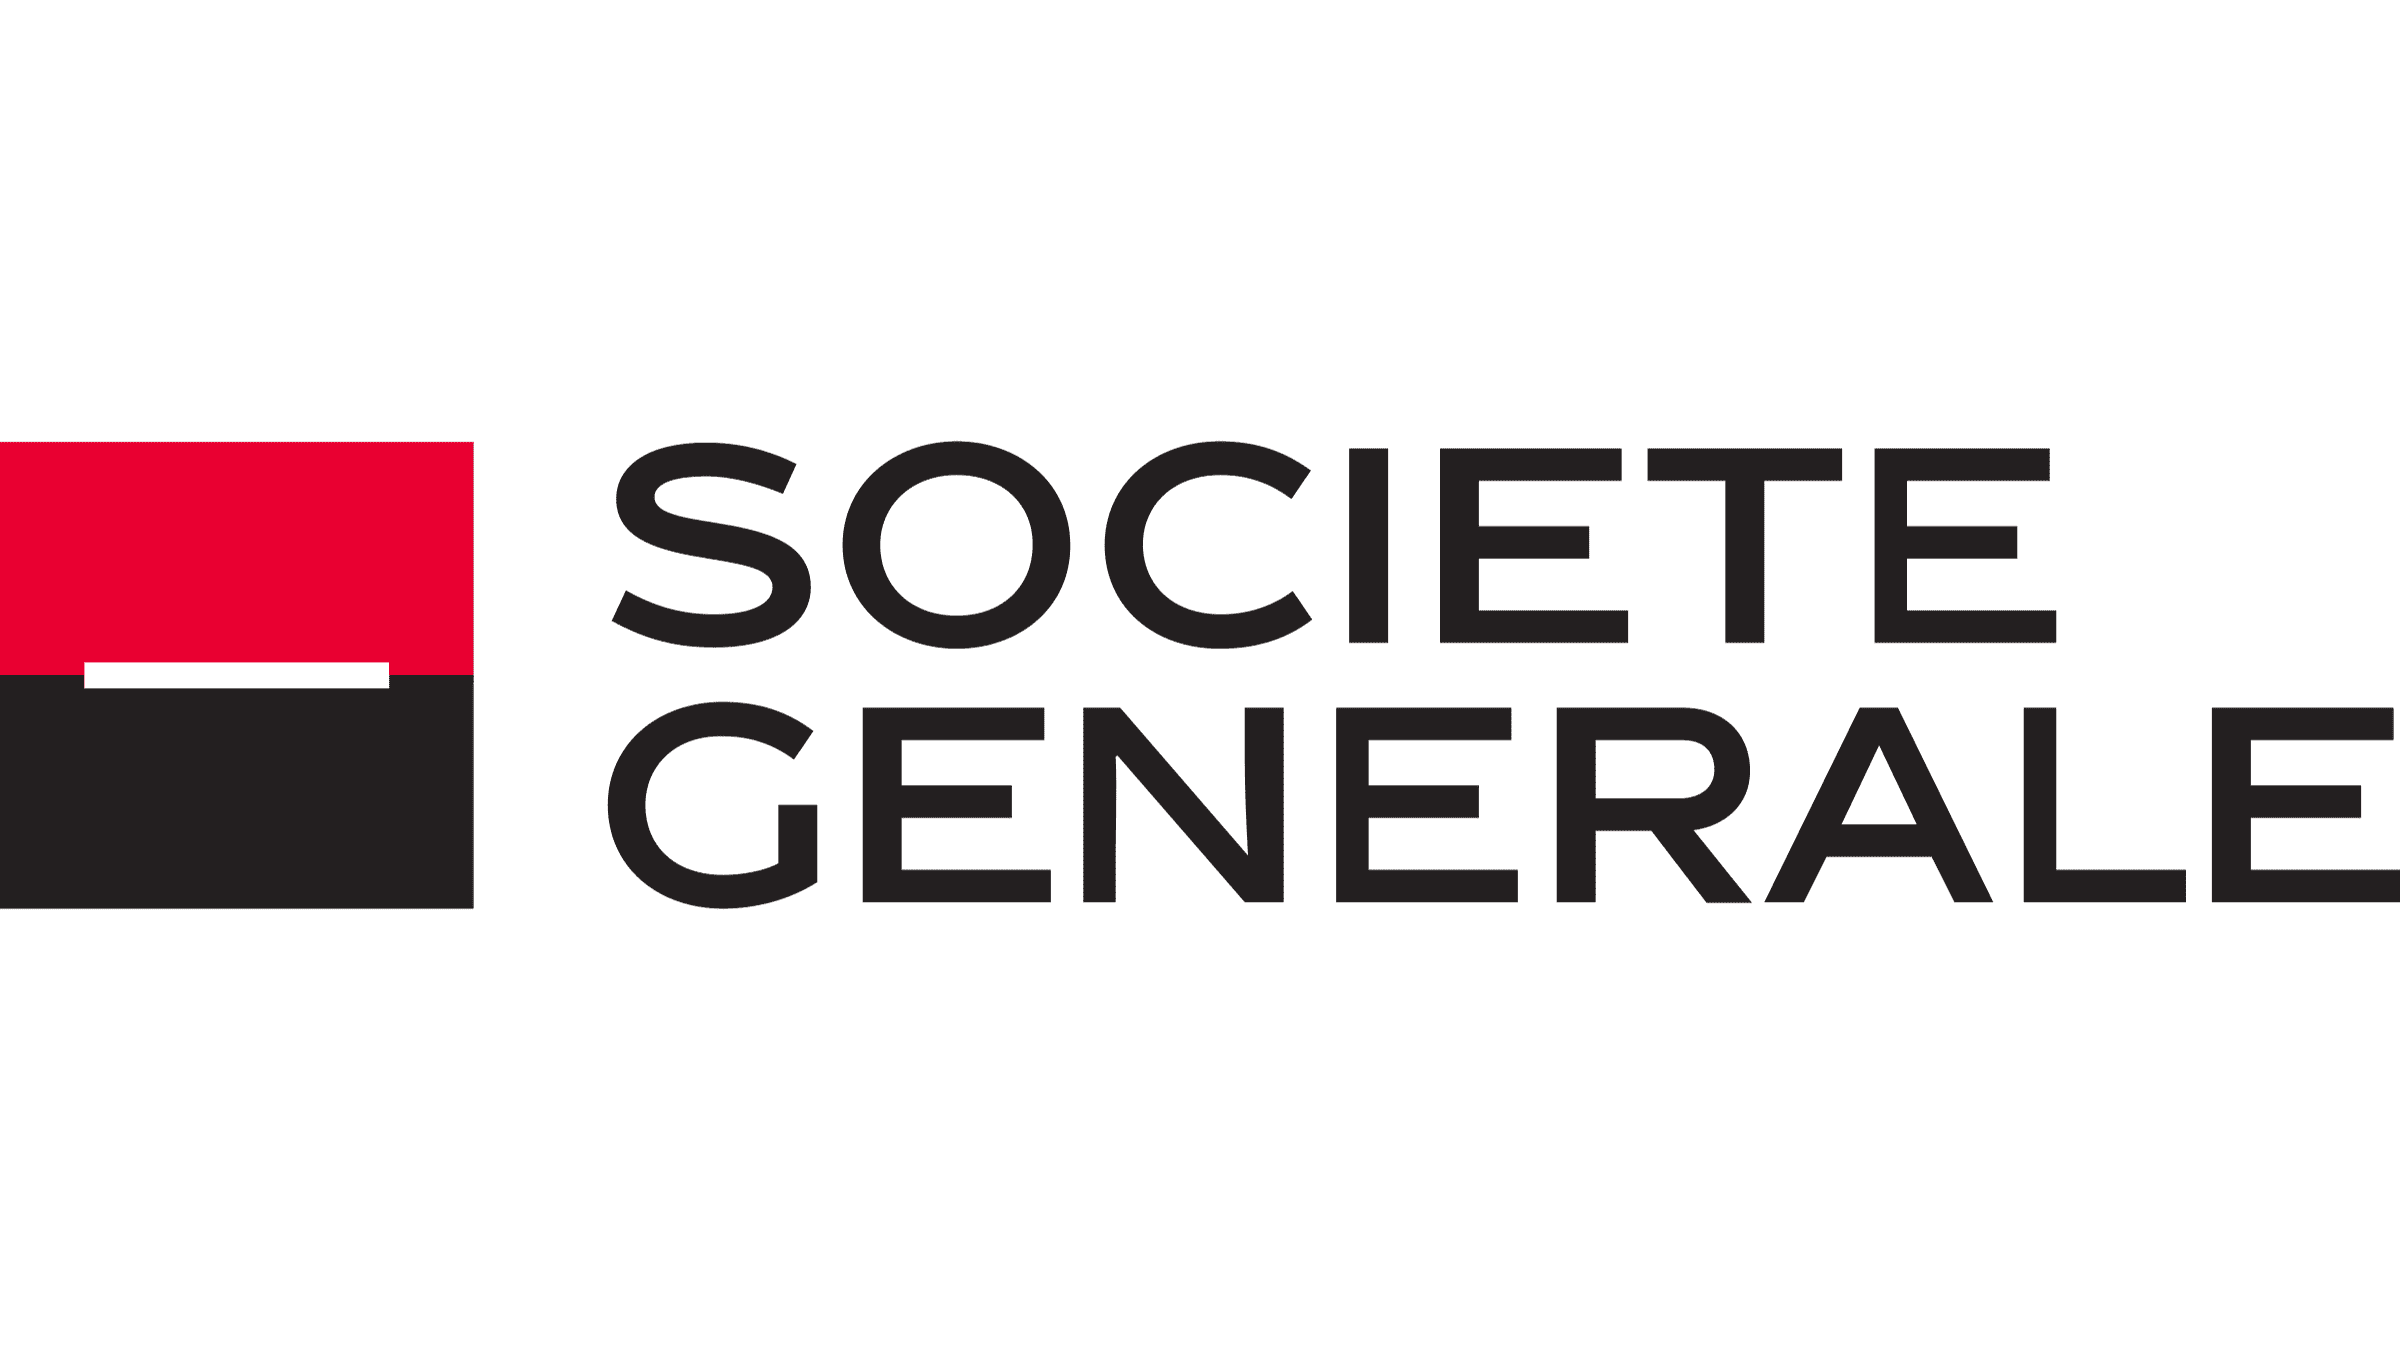 Societe-Generale-logo